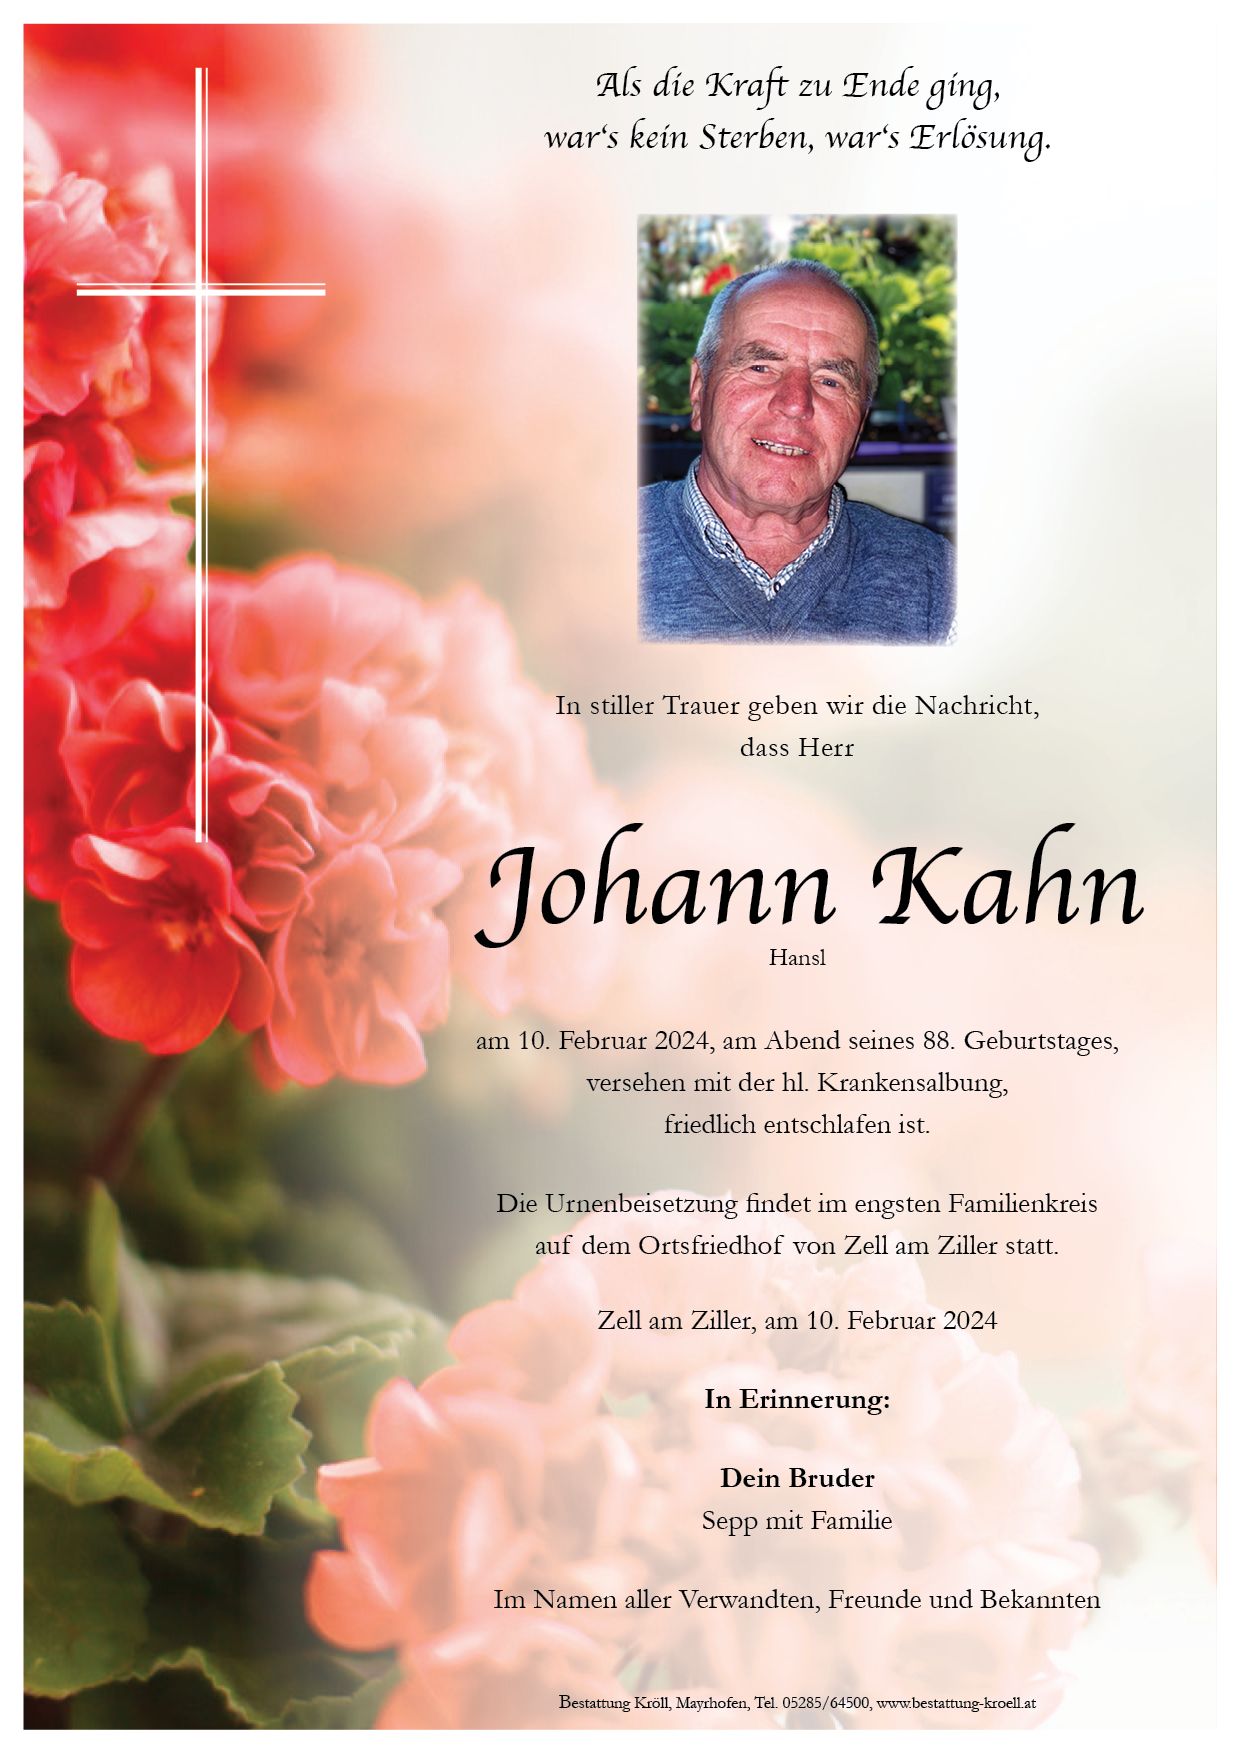 Kahn Johann